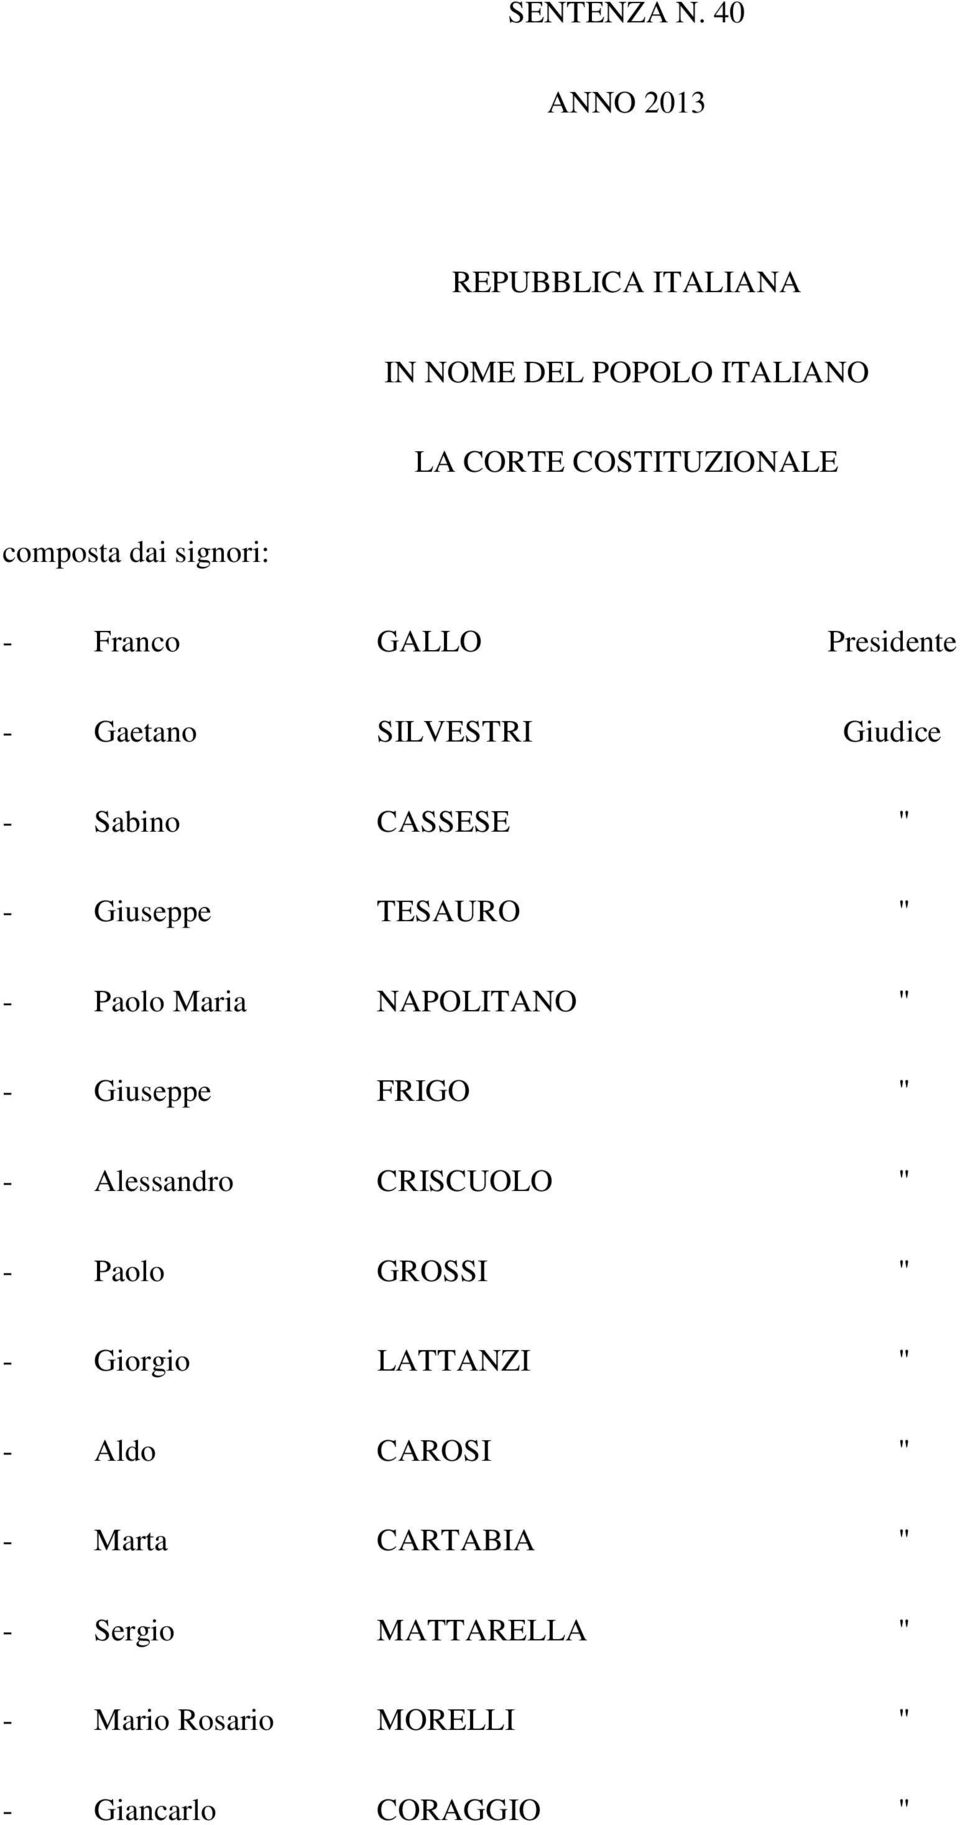 - Franco GALLO Presidente - Gaetano SILVESTRI Giudice - Sabino CASSESE " - Giuseppe TESAURO " - Paolo